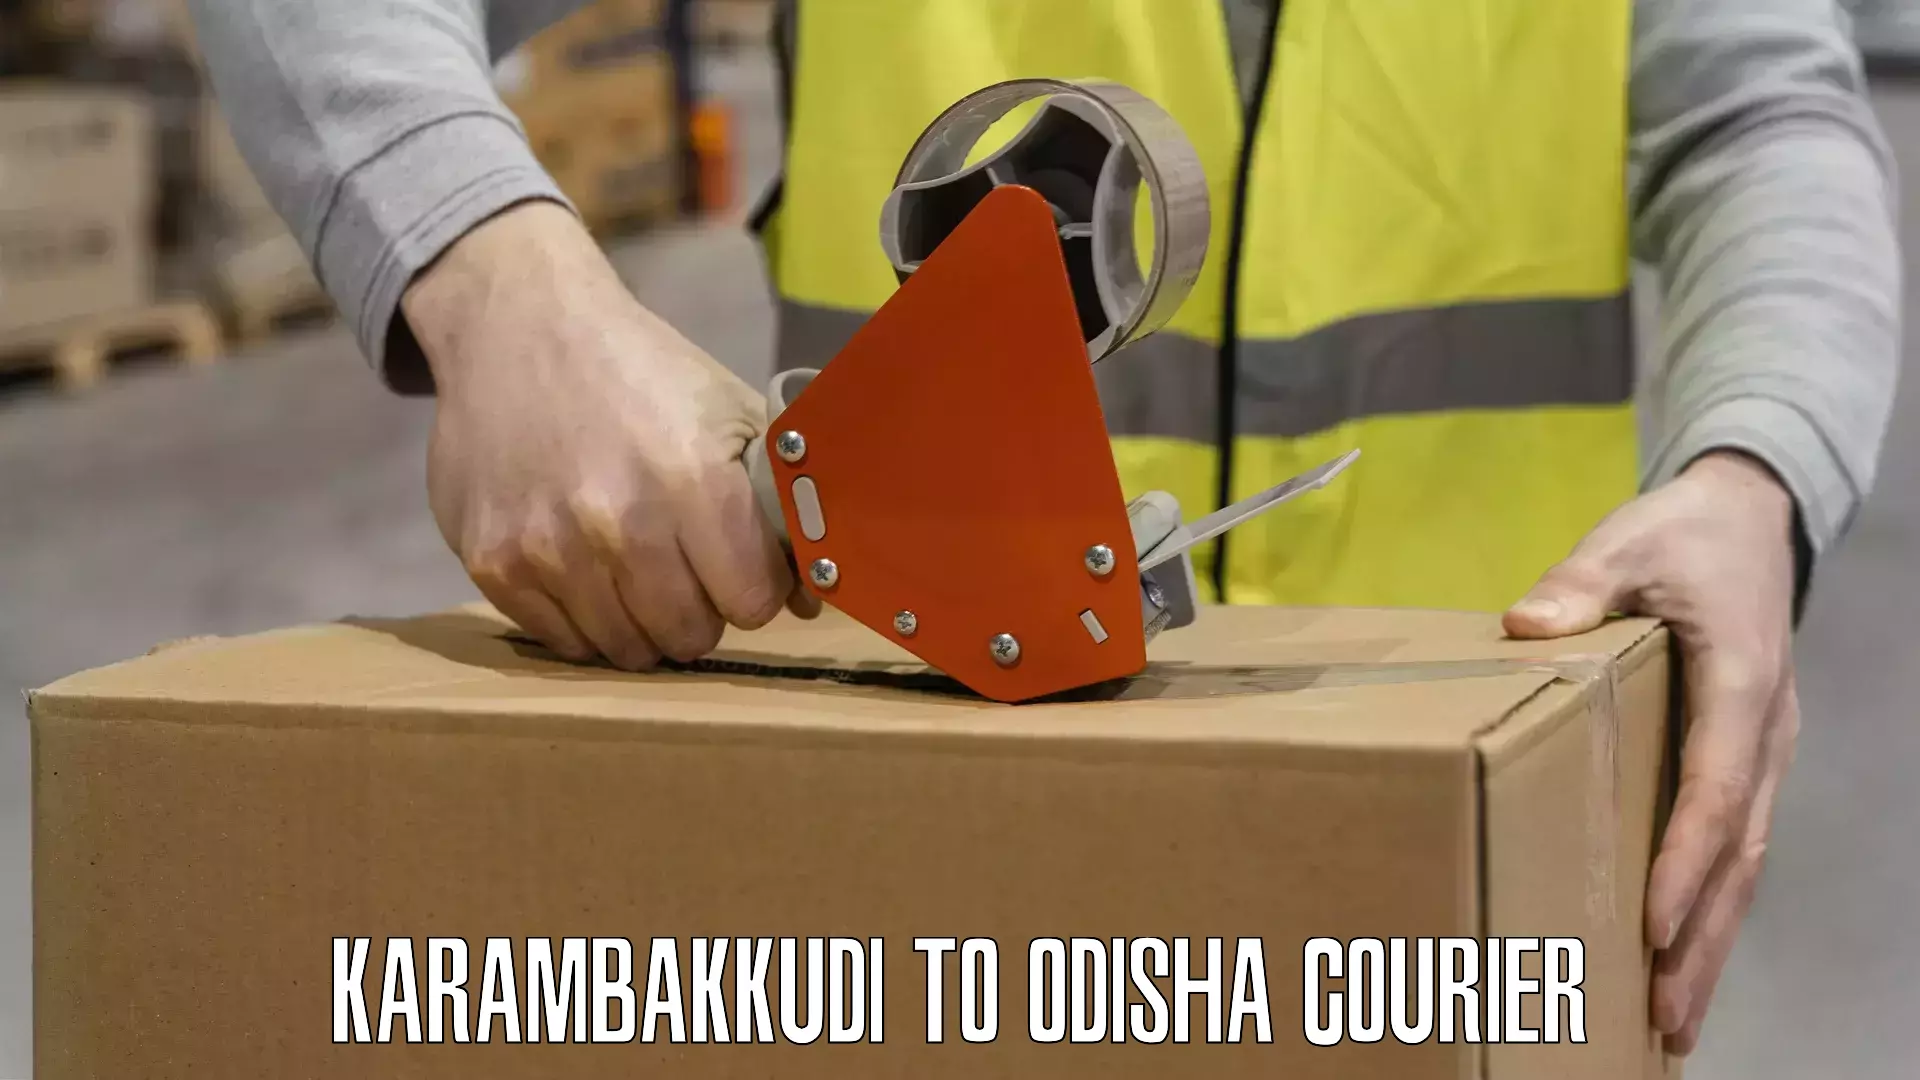 Large-scale shipping solutions Karambakkudi to Dhamara